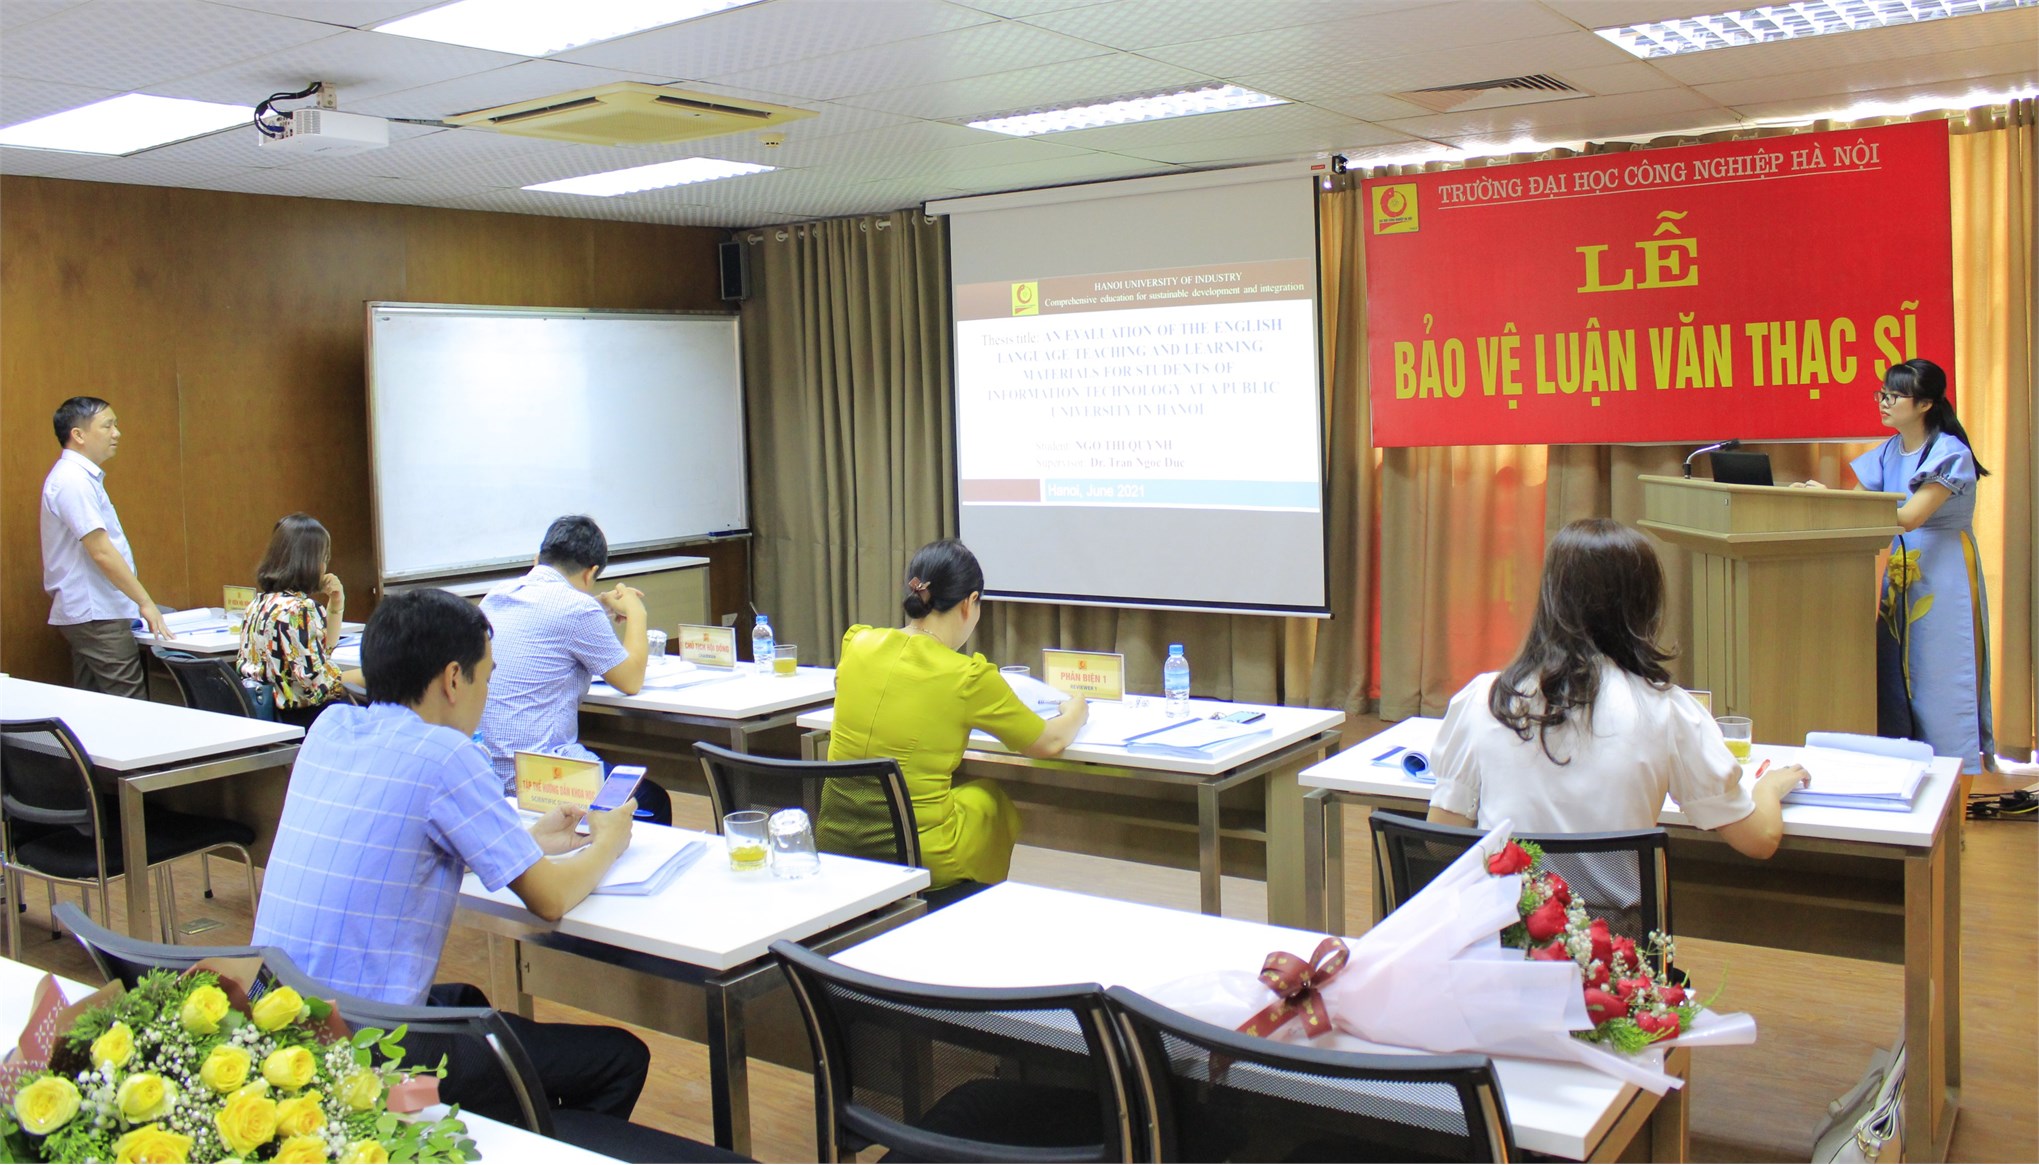 Trường Đại học Công nghiệp Hà Nội, tổ chức bảo vệ luận văn thạc sĩ cho học viên cao học ngành Ngôn ngữ Anh – khóa 9 đợt 1 (2019-2021)